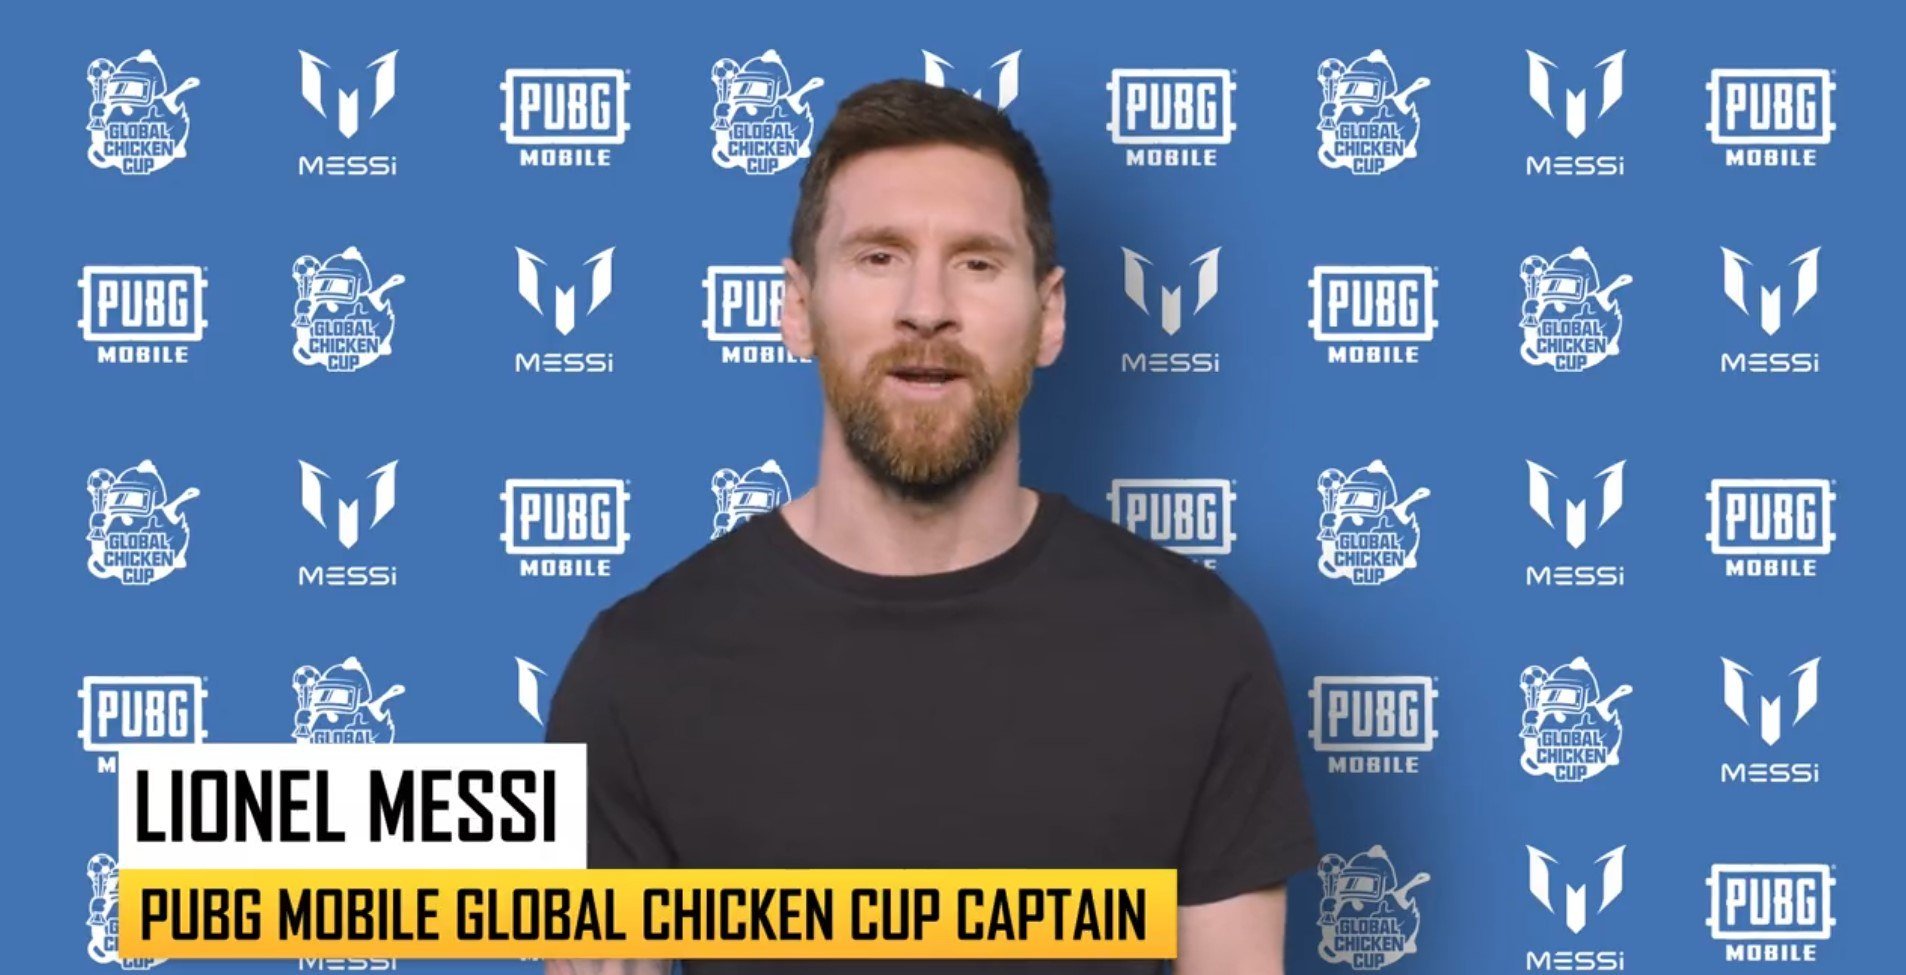 PUBG Mobile kooperiert mit Fußball-Superstar Lionel Messi für den Global Chicken Cup